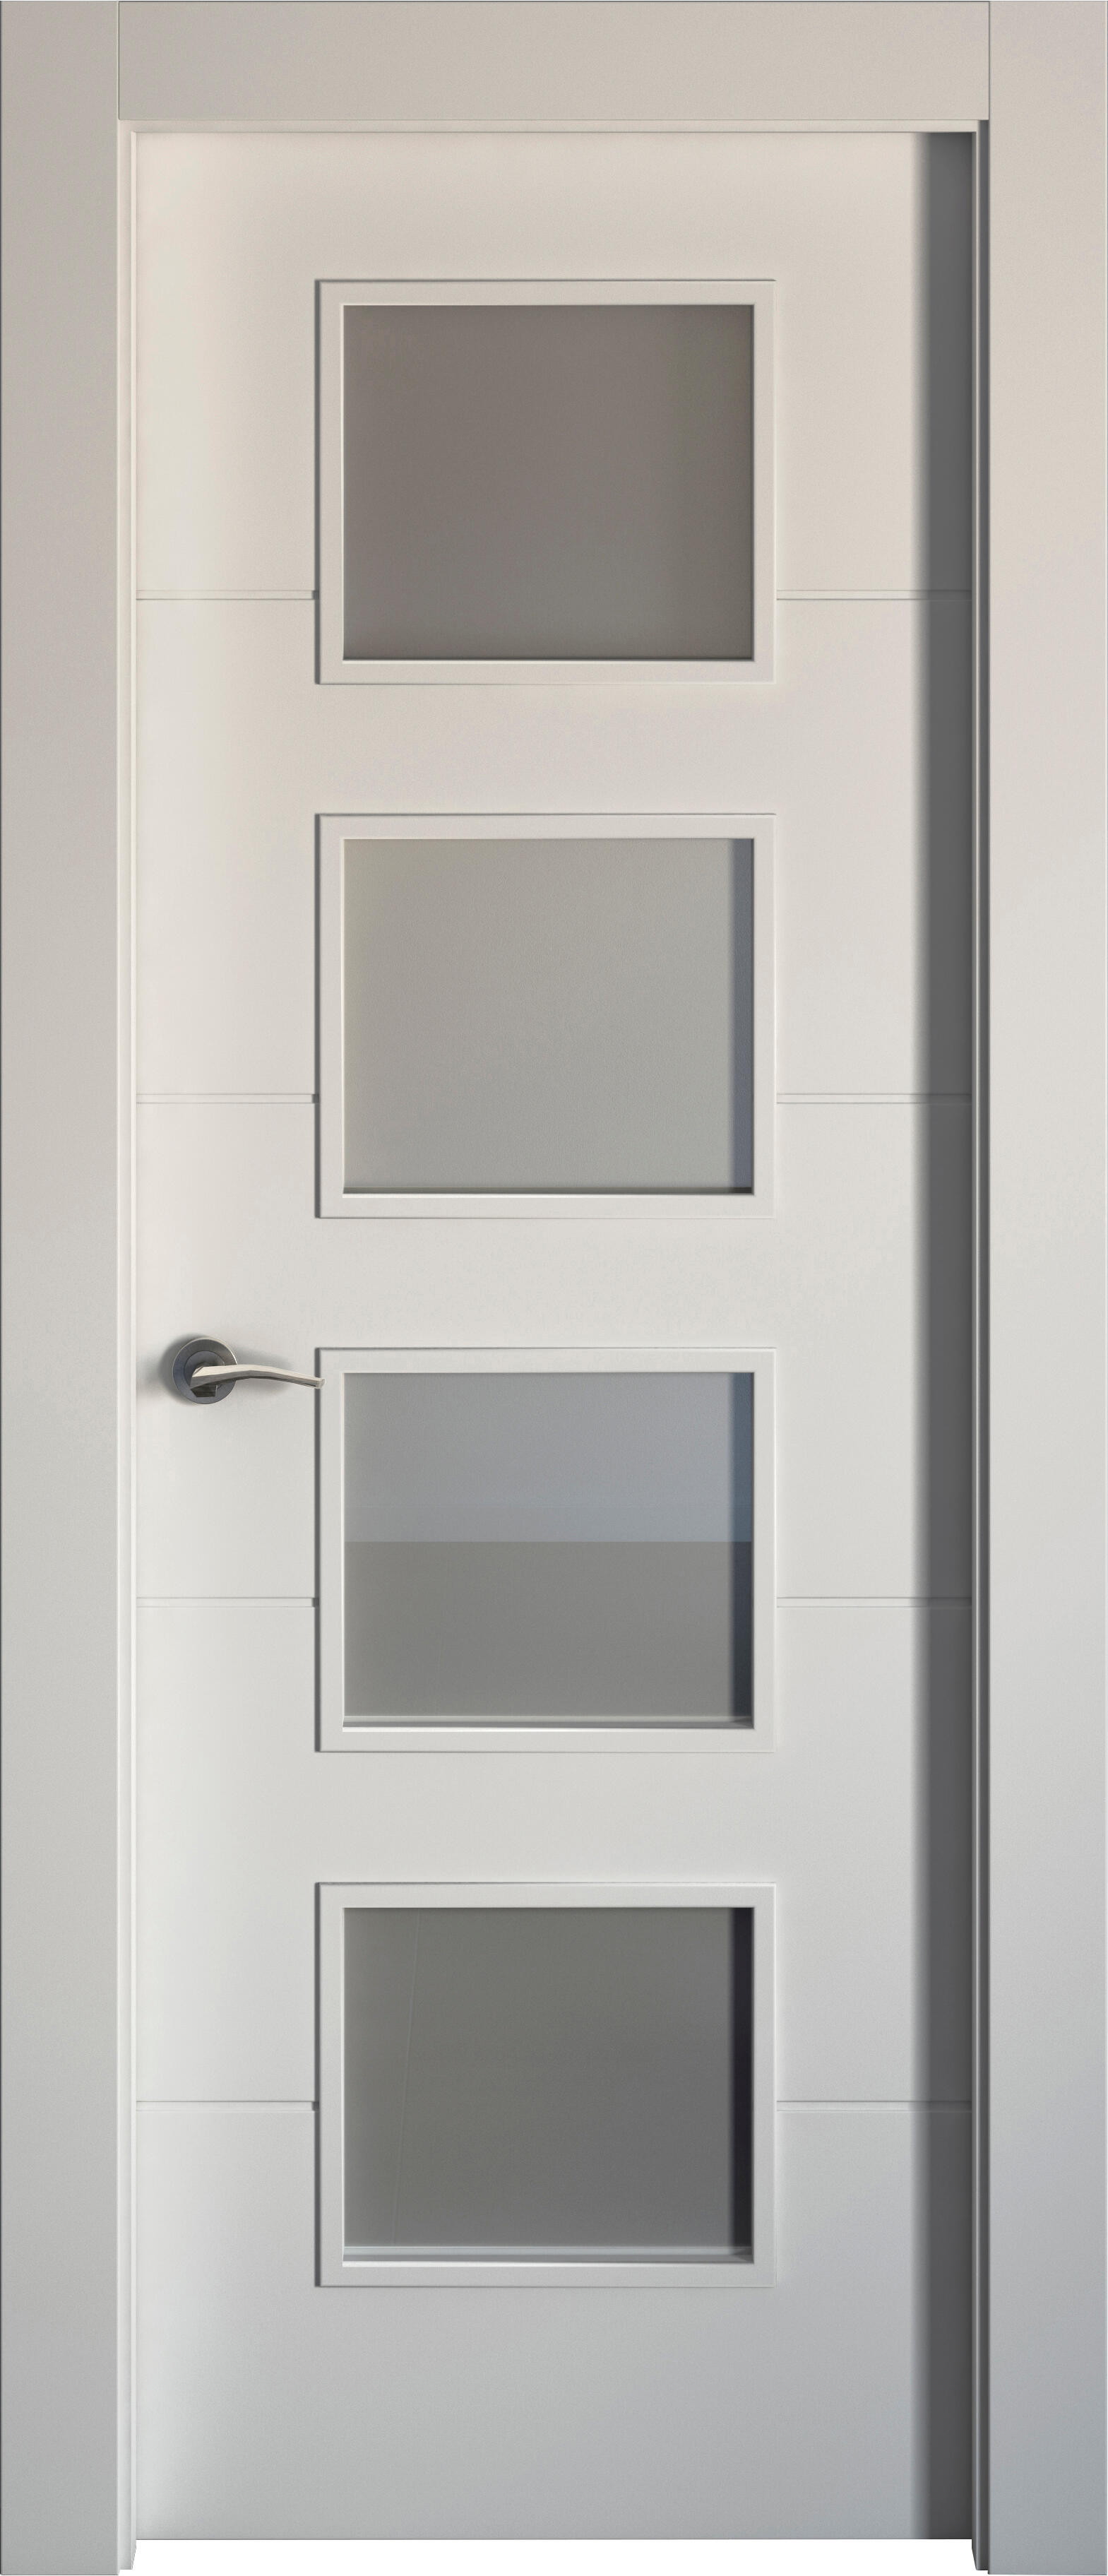 Puerta holanda blanco apertura derecha con cristal 82.5cm